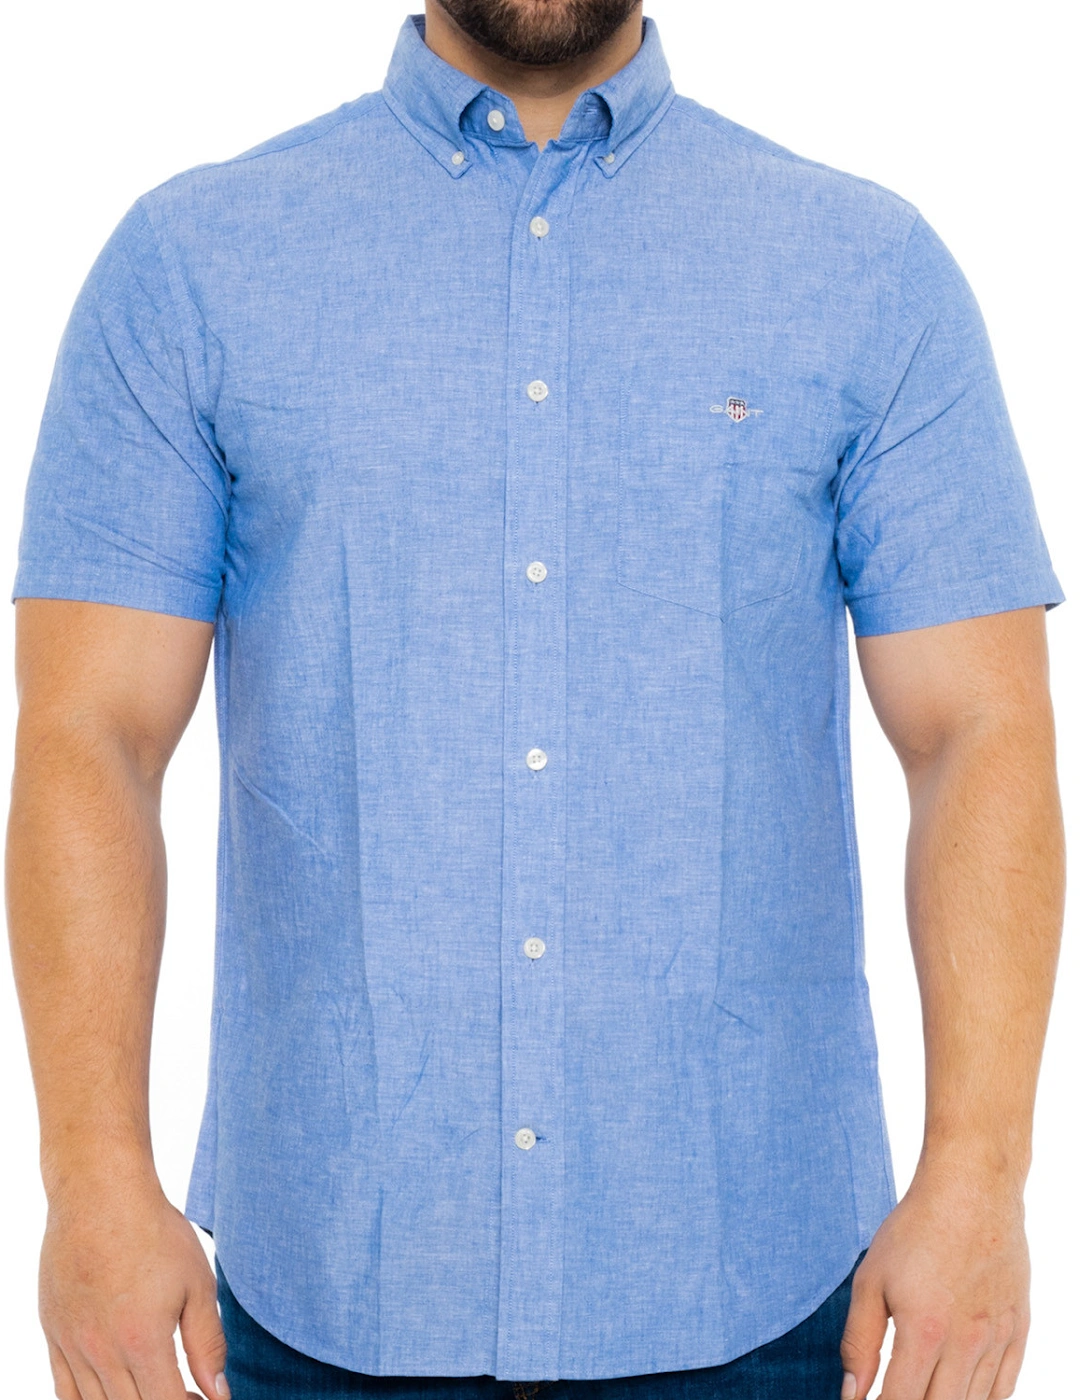 Mens Cotton & Linen Short Sleeve Shirt (Blue), 8 of 7